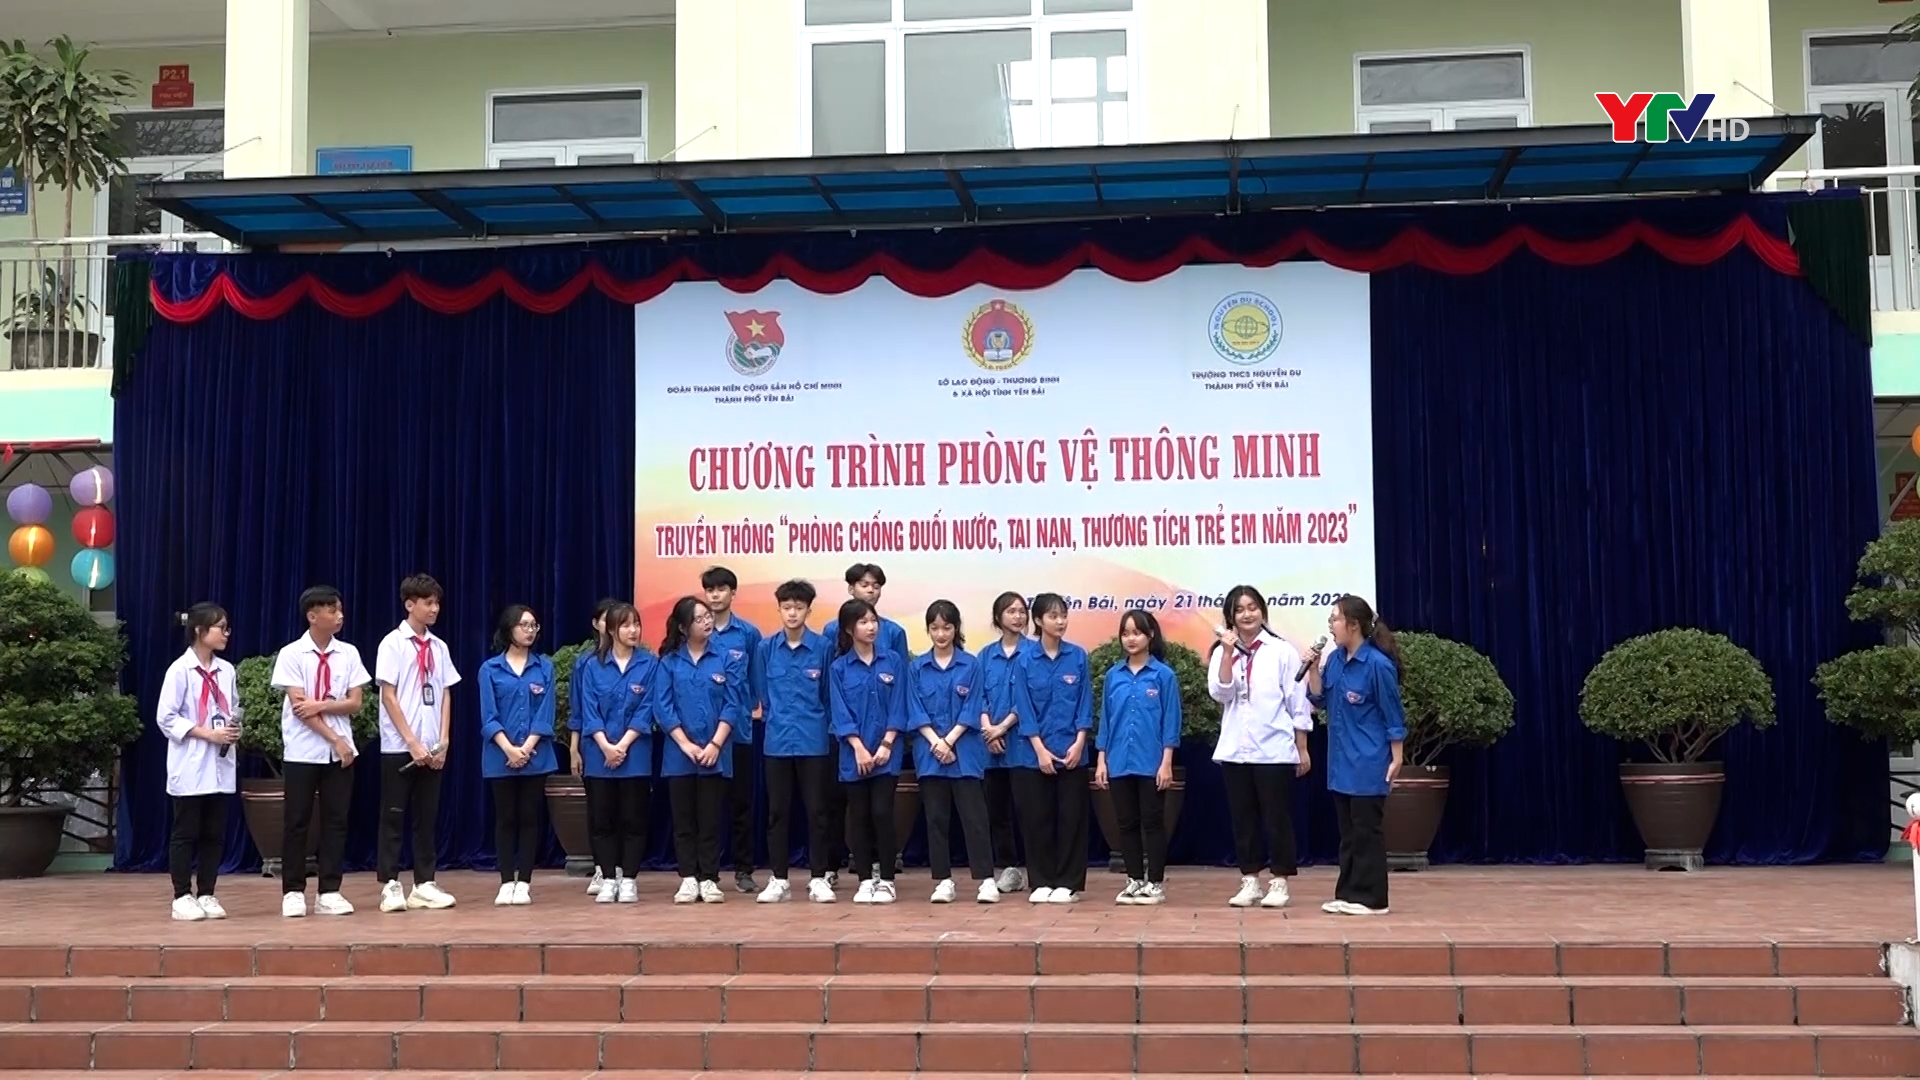 Thành phố Yên Bái: Truyền thông phòng chống đuối nước, tai nạn thương tích trẻ em tại trường TH Nguyễn Du